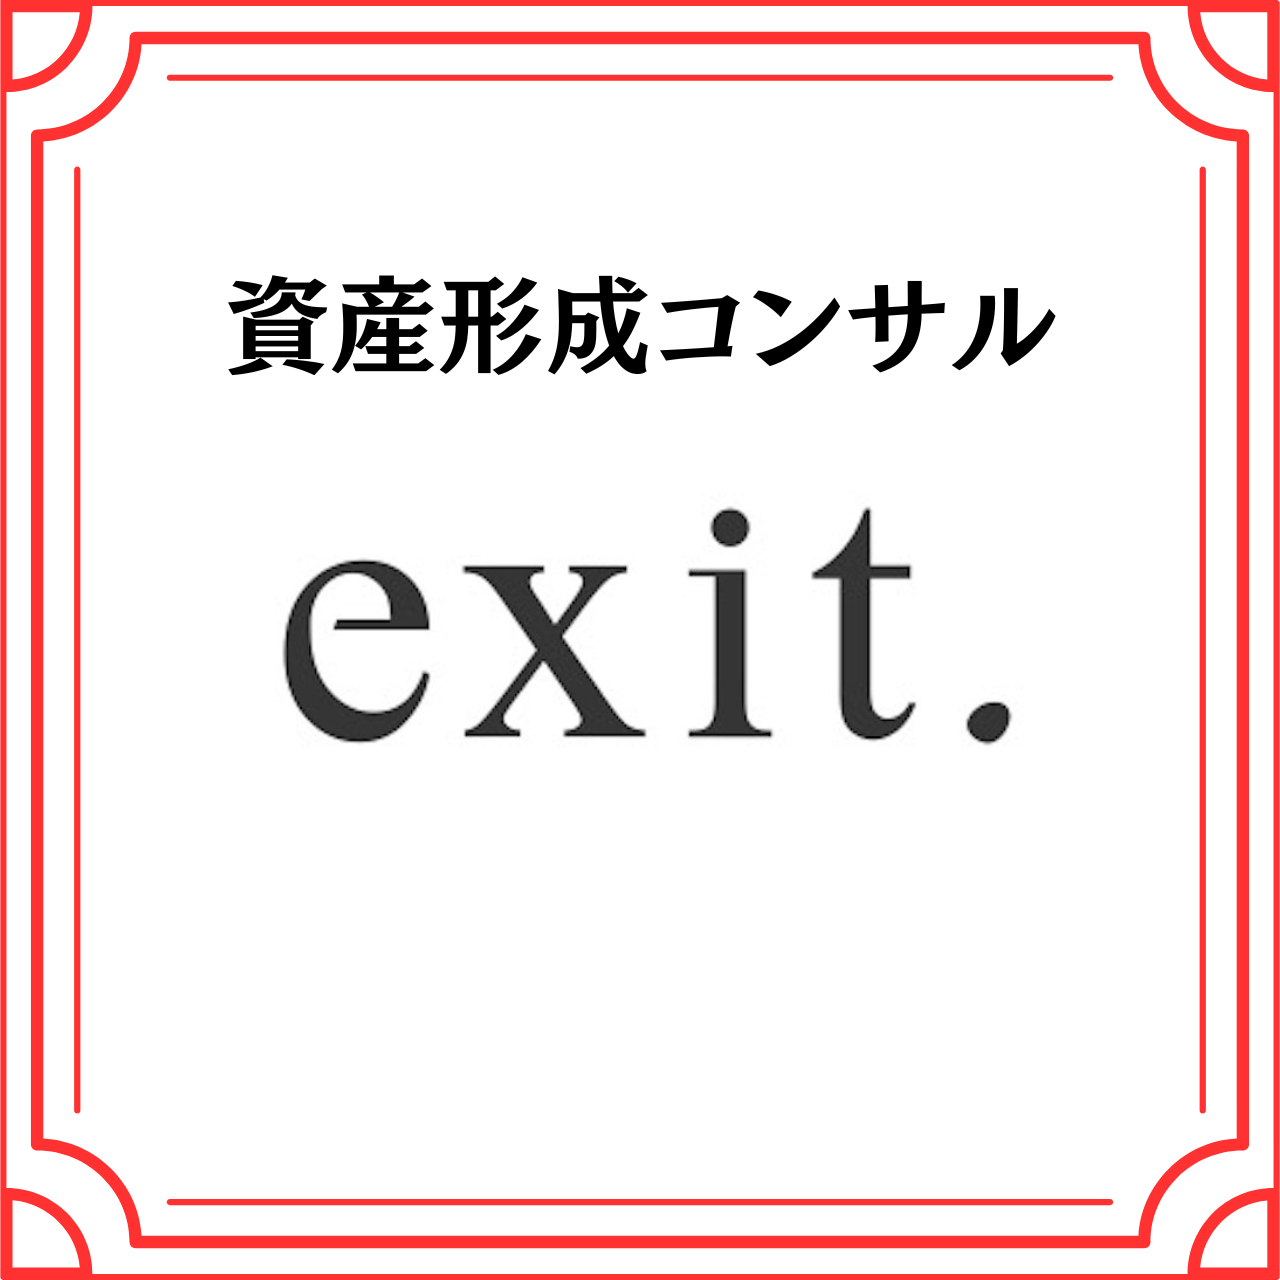 「株式会社exit.」が協賛企業になりました！